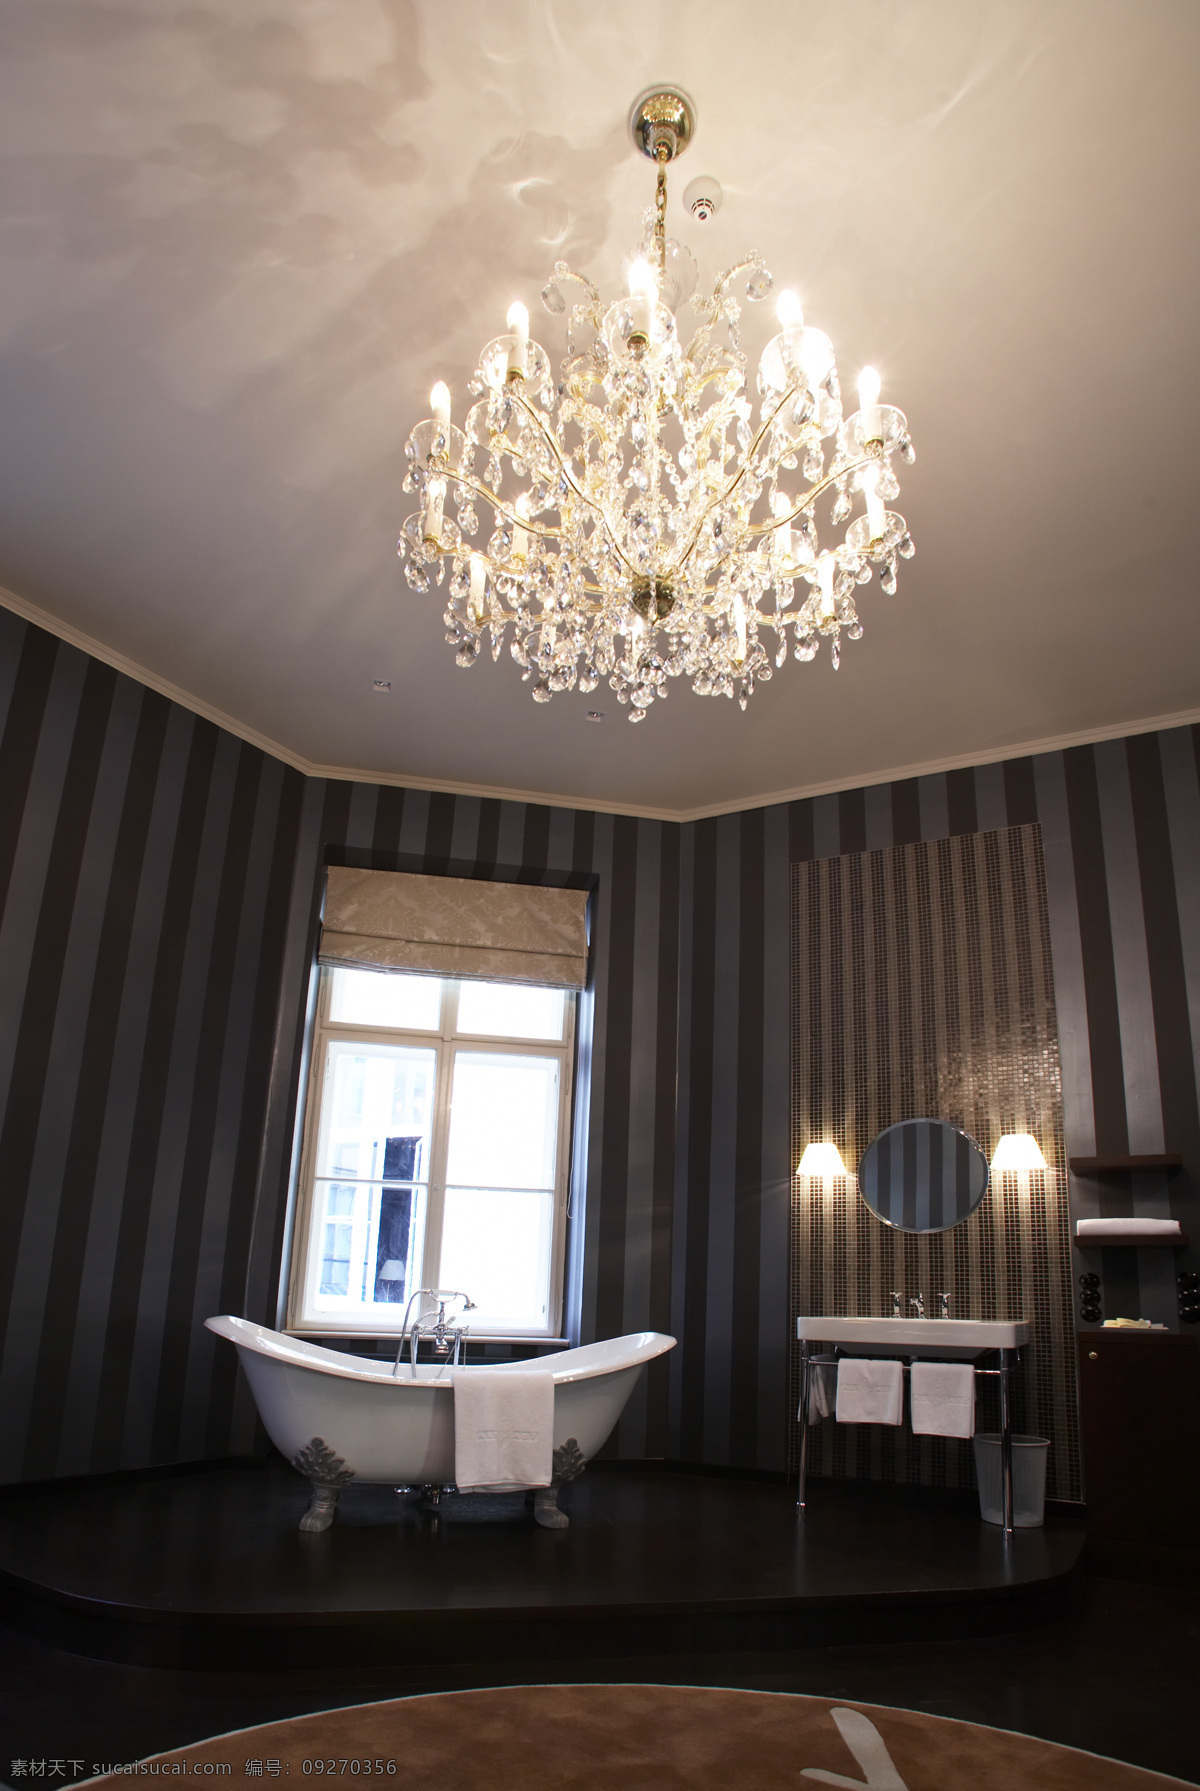 建筑景观 室内设计 水晶吊灯 浴缸 浴室 自然景观 黑白 调子 黑白调子 建筑艺术 家居装饰素材